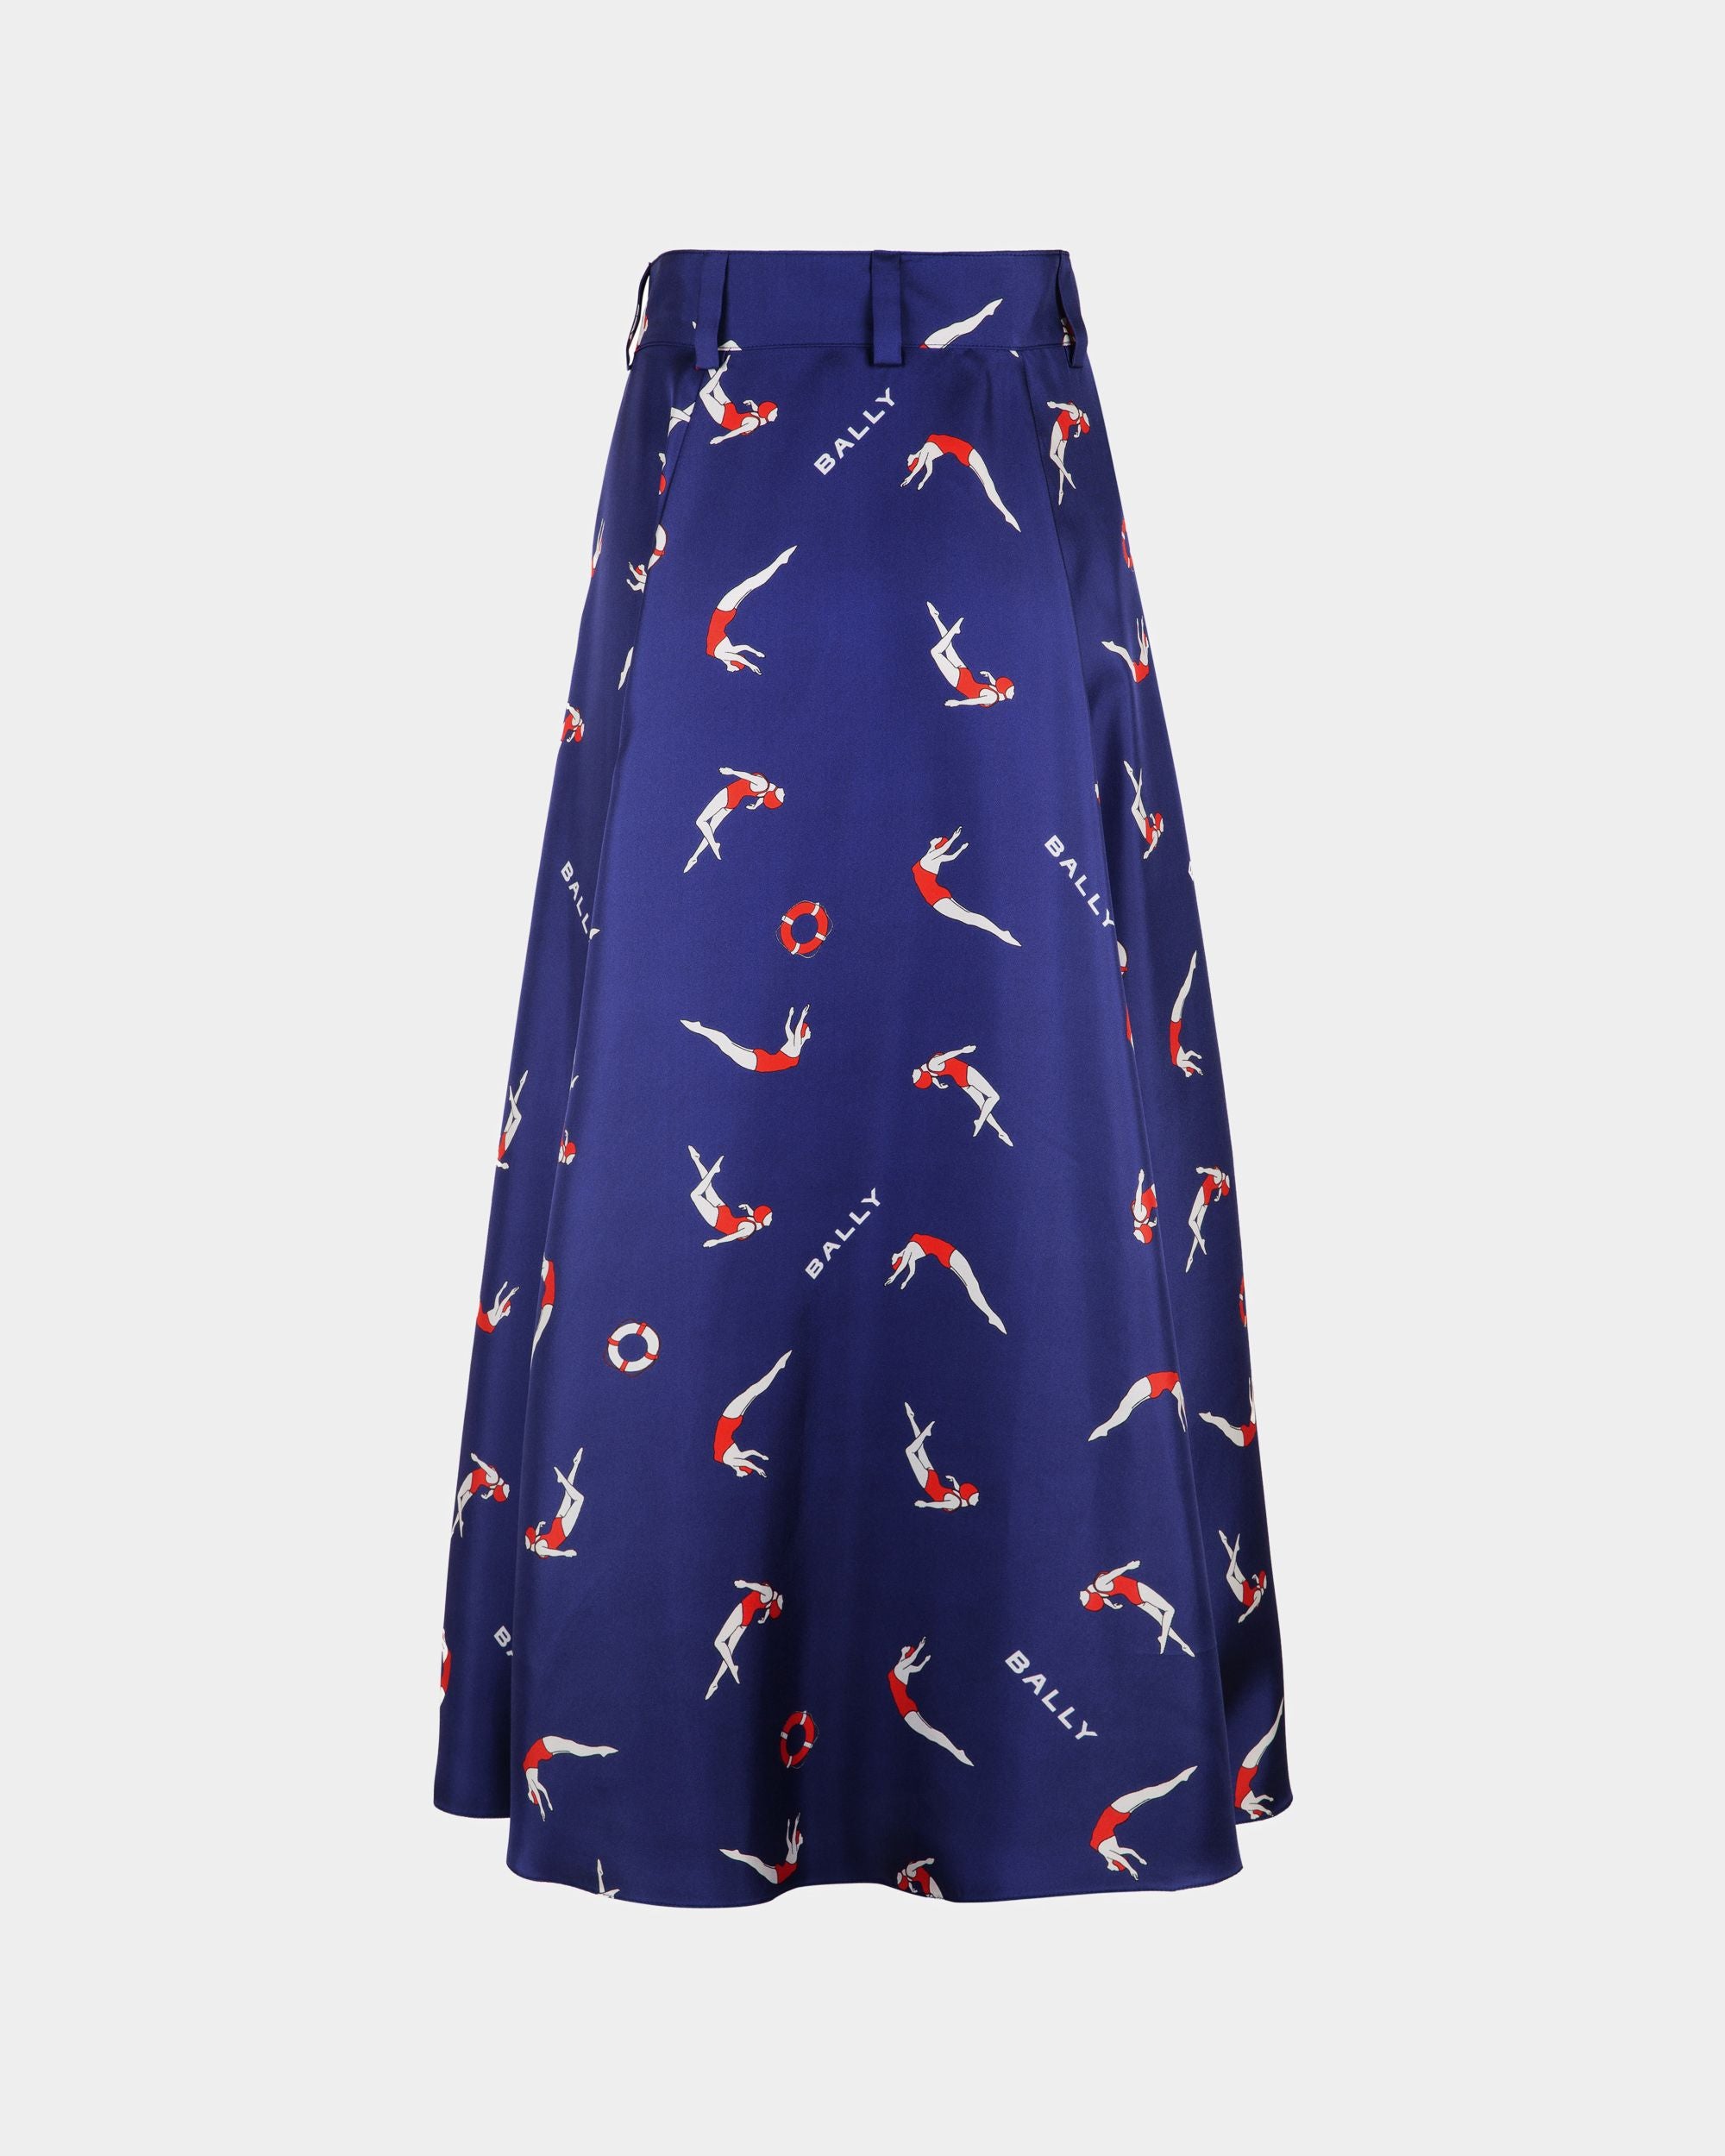 Women's Printed Midi Skirt in Blue Silk | Bally | Still Life Back